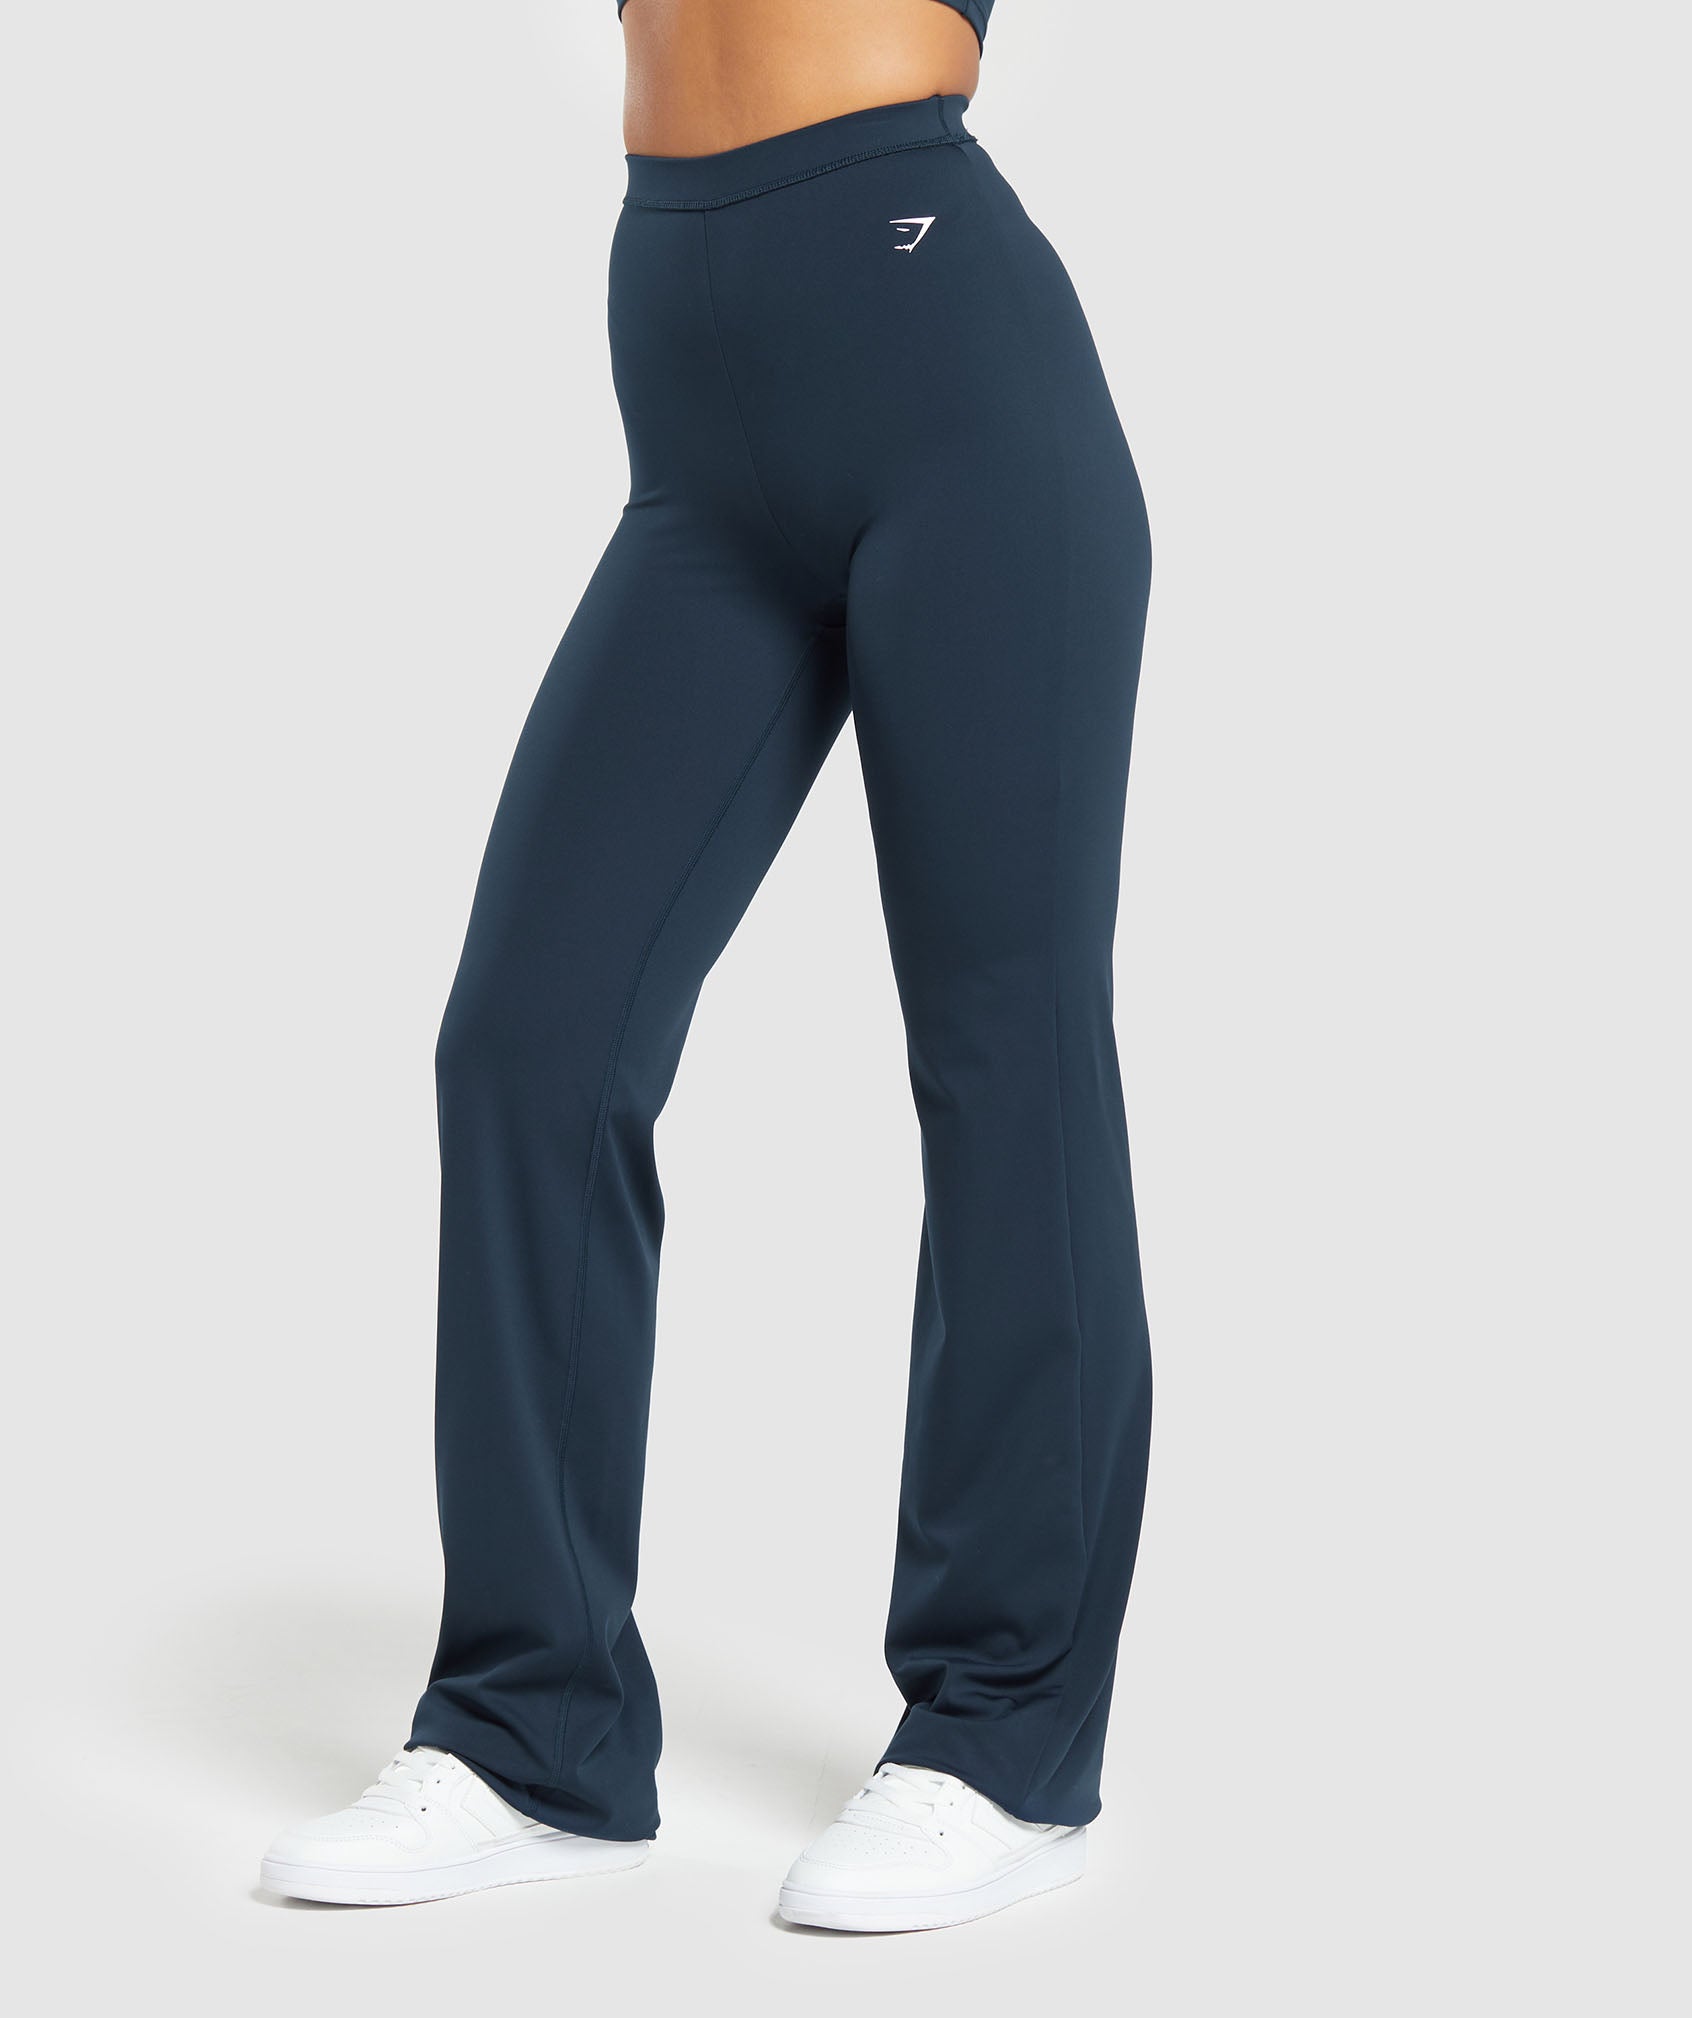 Navy Blue Yoga Pants